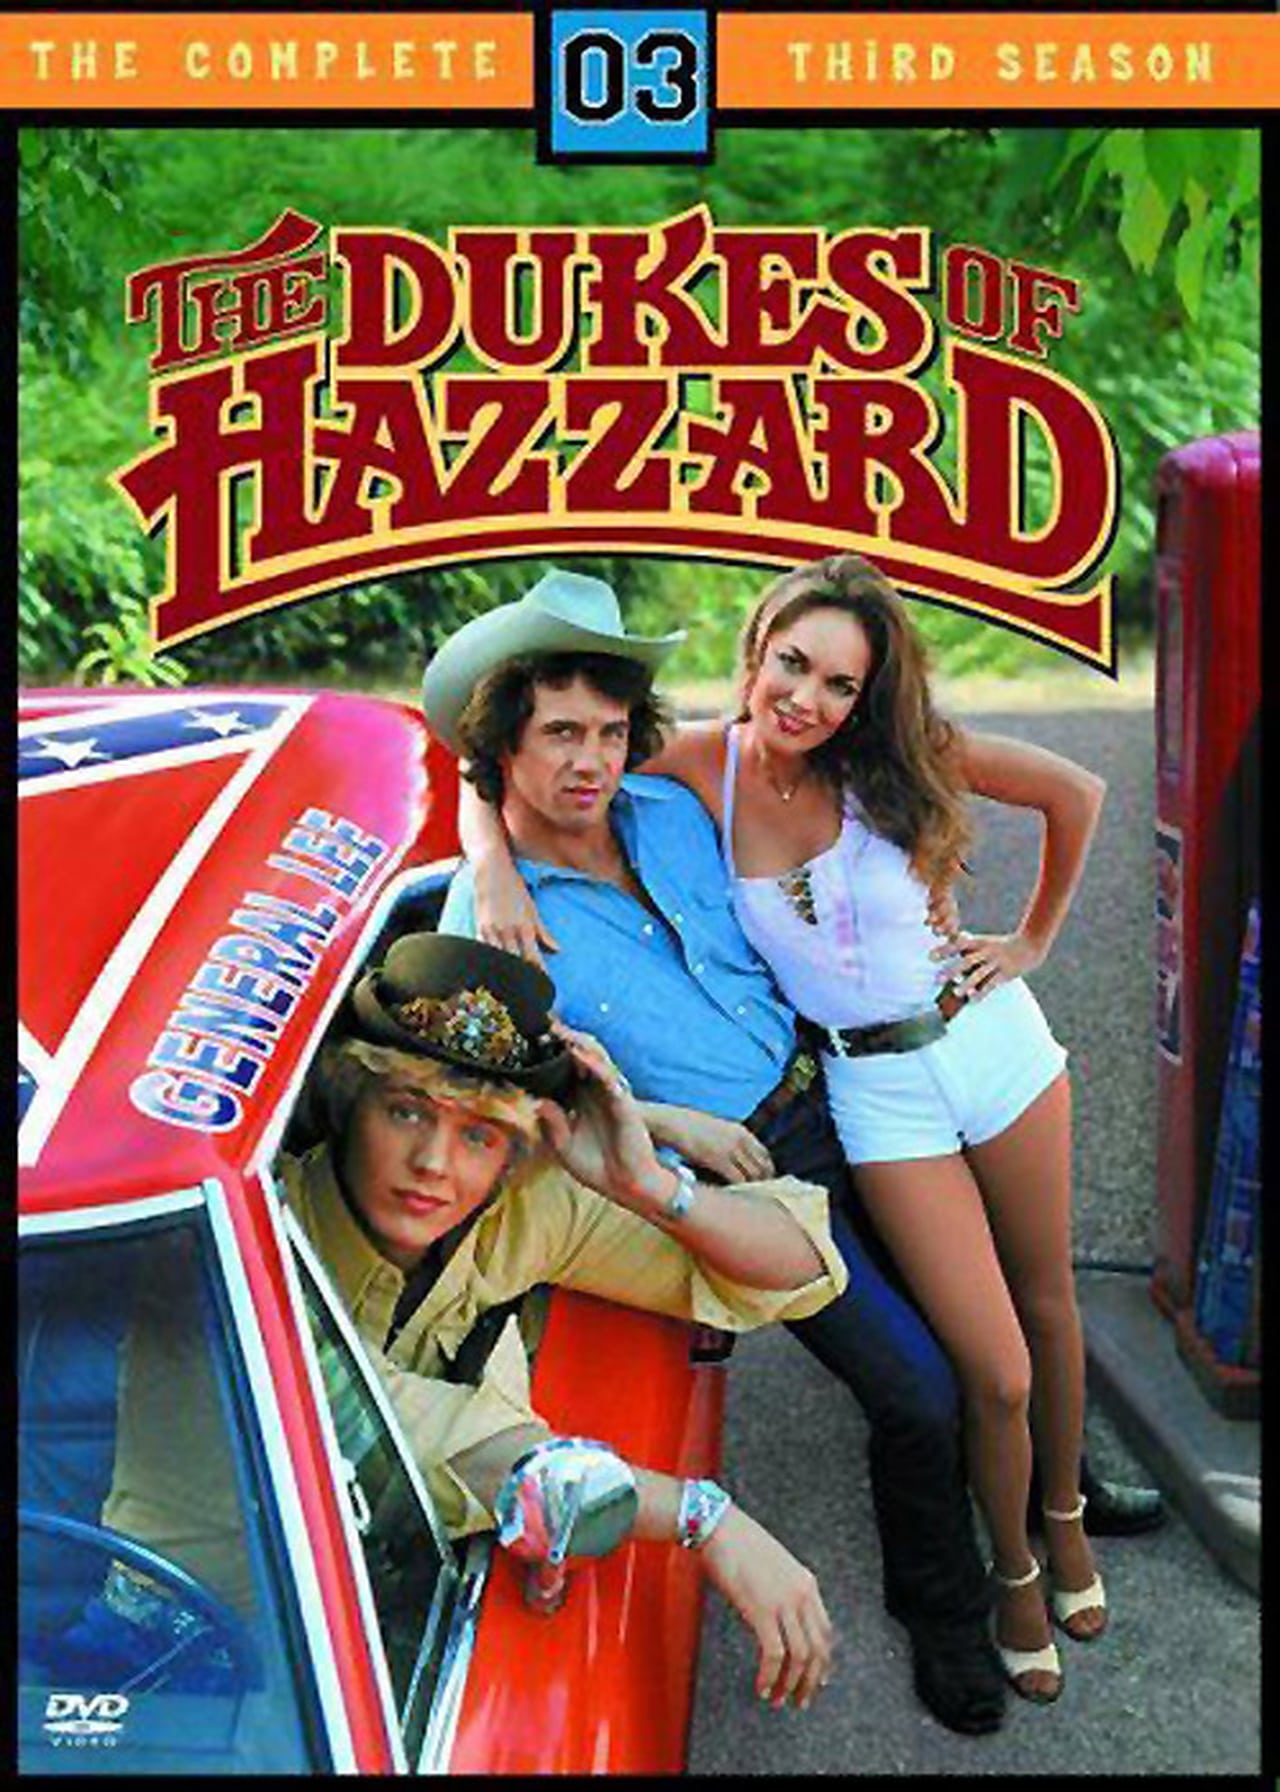 The Dukes Of Hazzard (1980)